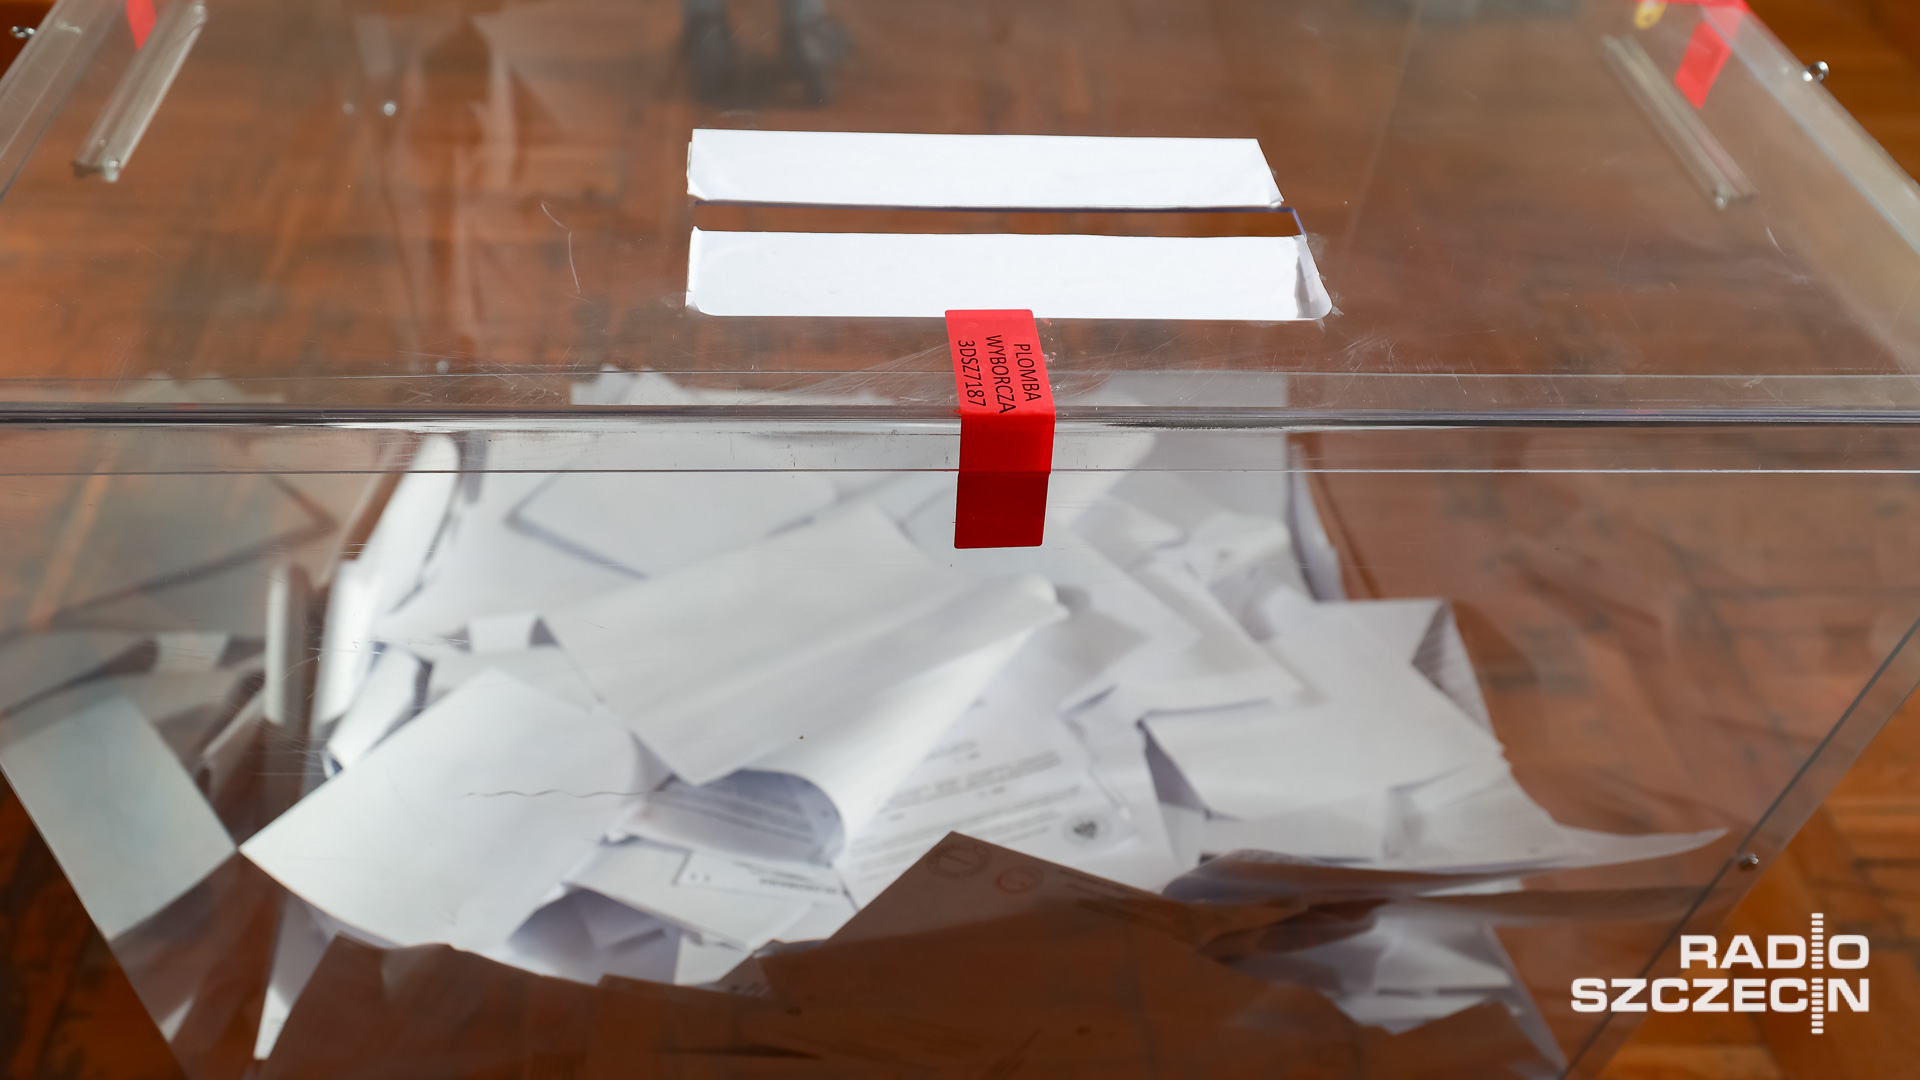 Państwowa Komisja Wyborcza ogłosiła ostateczne wyniki wyborów samorządowych. Najwięcej głosów w wyborach do sejmików województw uzyskało Prawo i Sprawiedliwość 34,27 procent. Drugi wynik należy do Koalicji Obywatelskiej - 30,59 procent. Na trzecim miejscu znalazła się Trzecia Droga, na którą głosowało 14,25 procent wyborców. Spośród ogólnokrajowych komitetów wyborczych Konfederacja i Bezpartyjni Samorządowcy zdobyli 7,23 procent głosów, a Lewica - 6,32 procent.